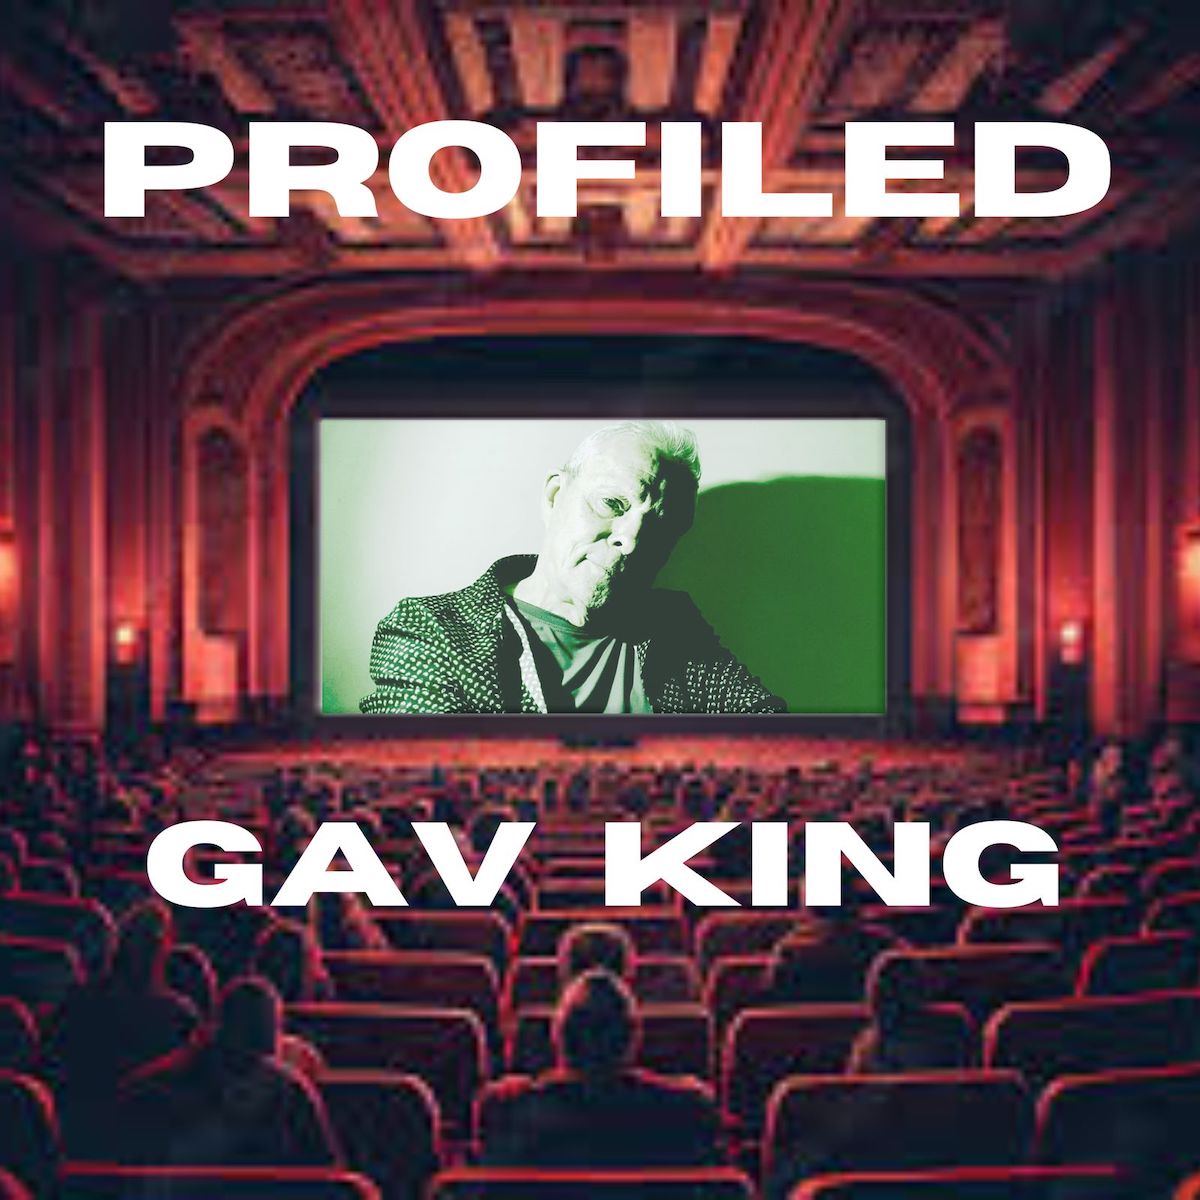 LISTEN: “Profiled” by Gavin King